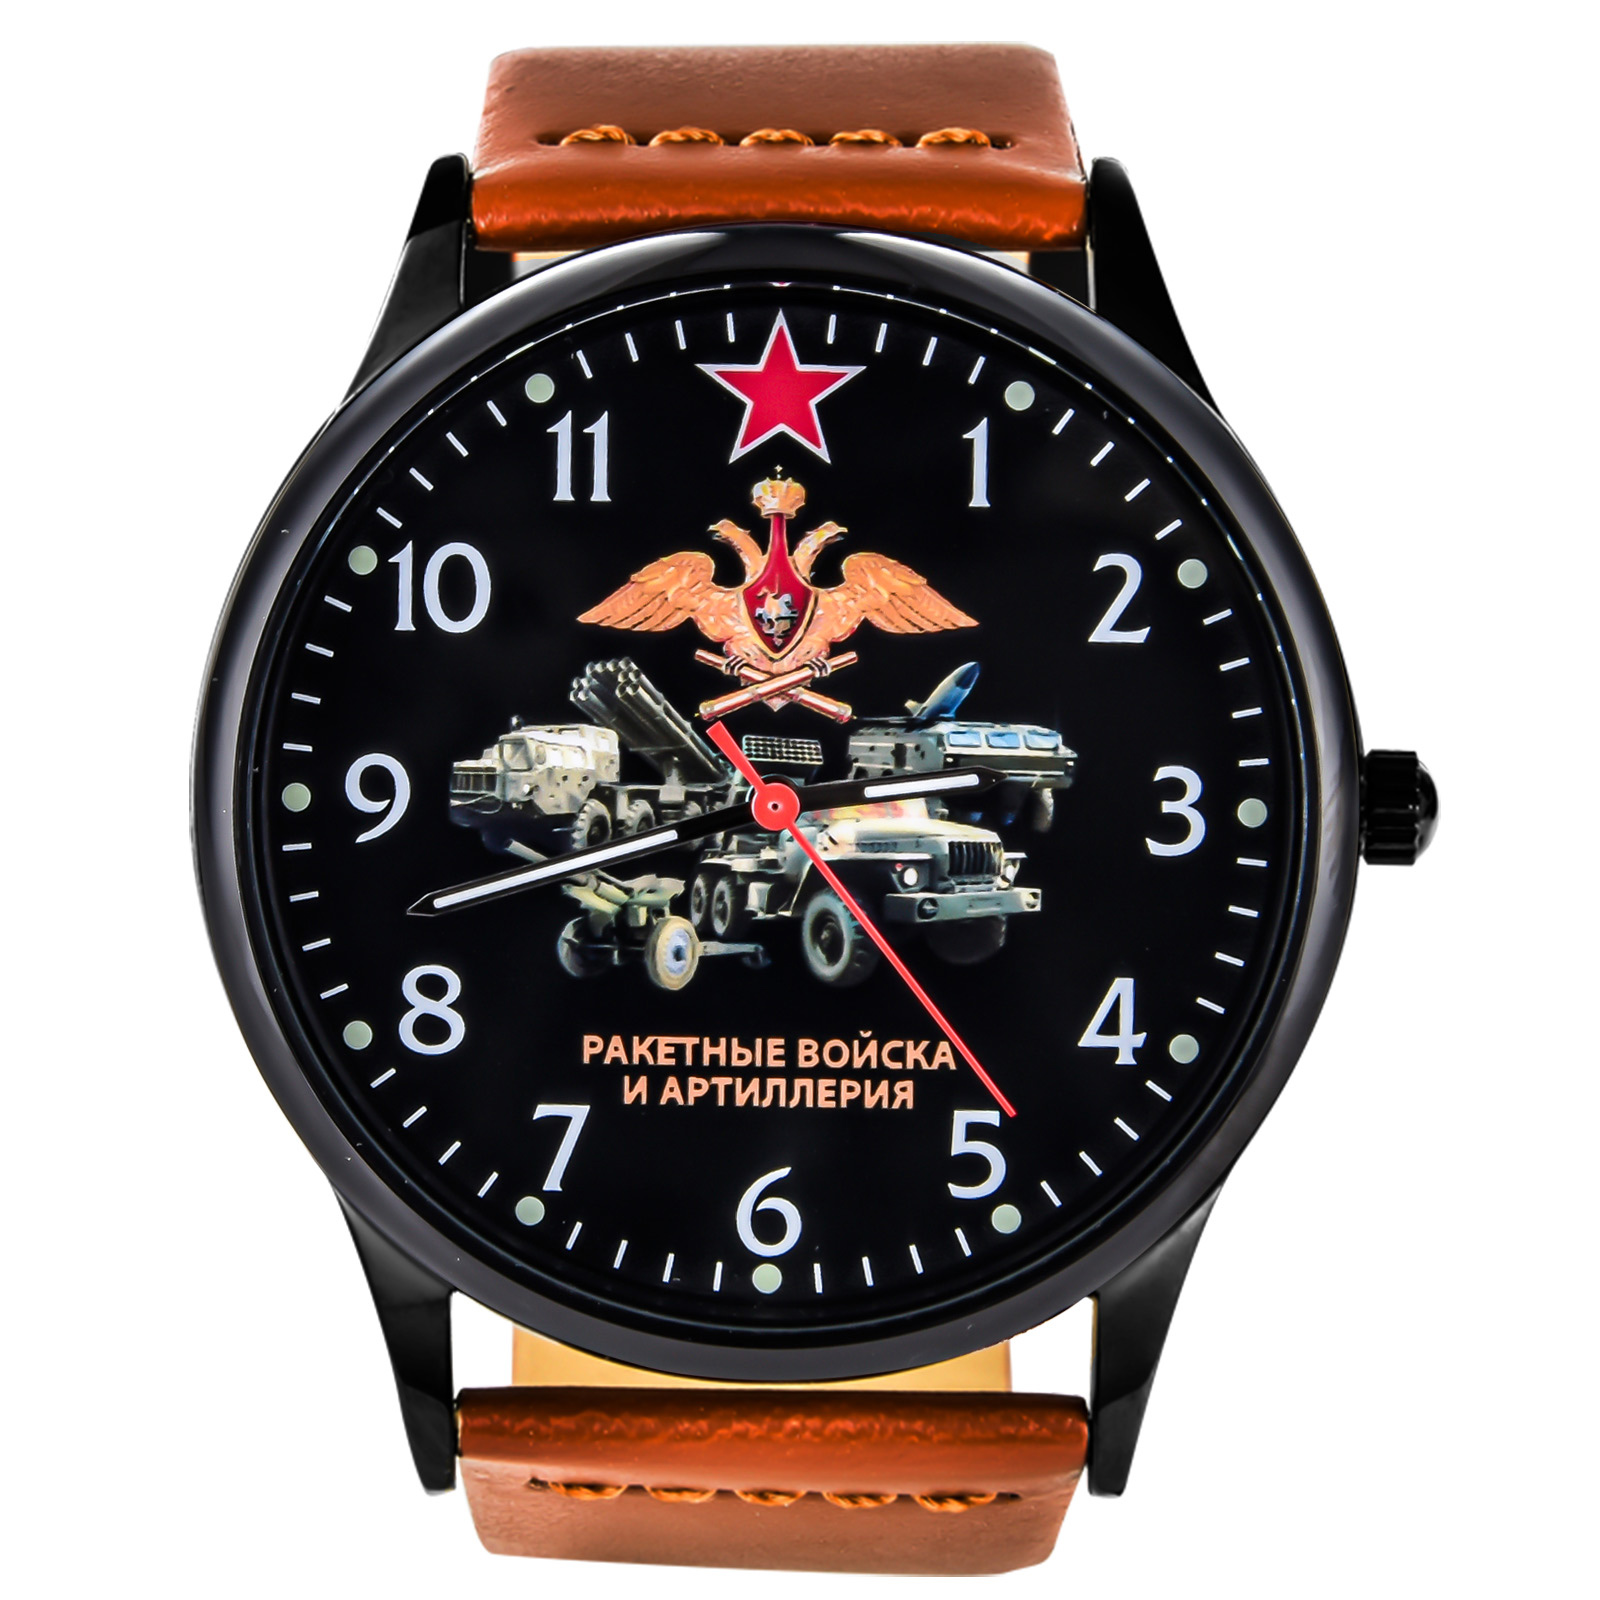 Командирские часы "Ракетные войска и Артиллерия" 